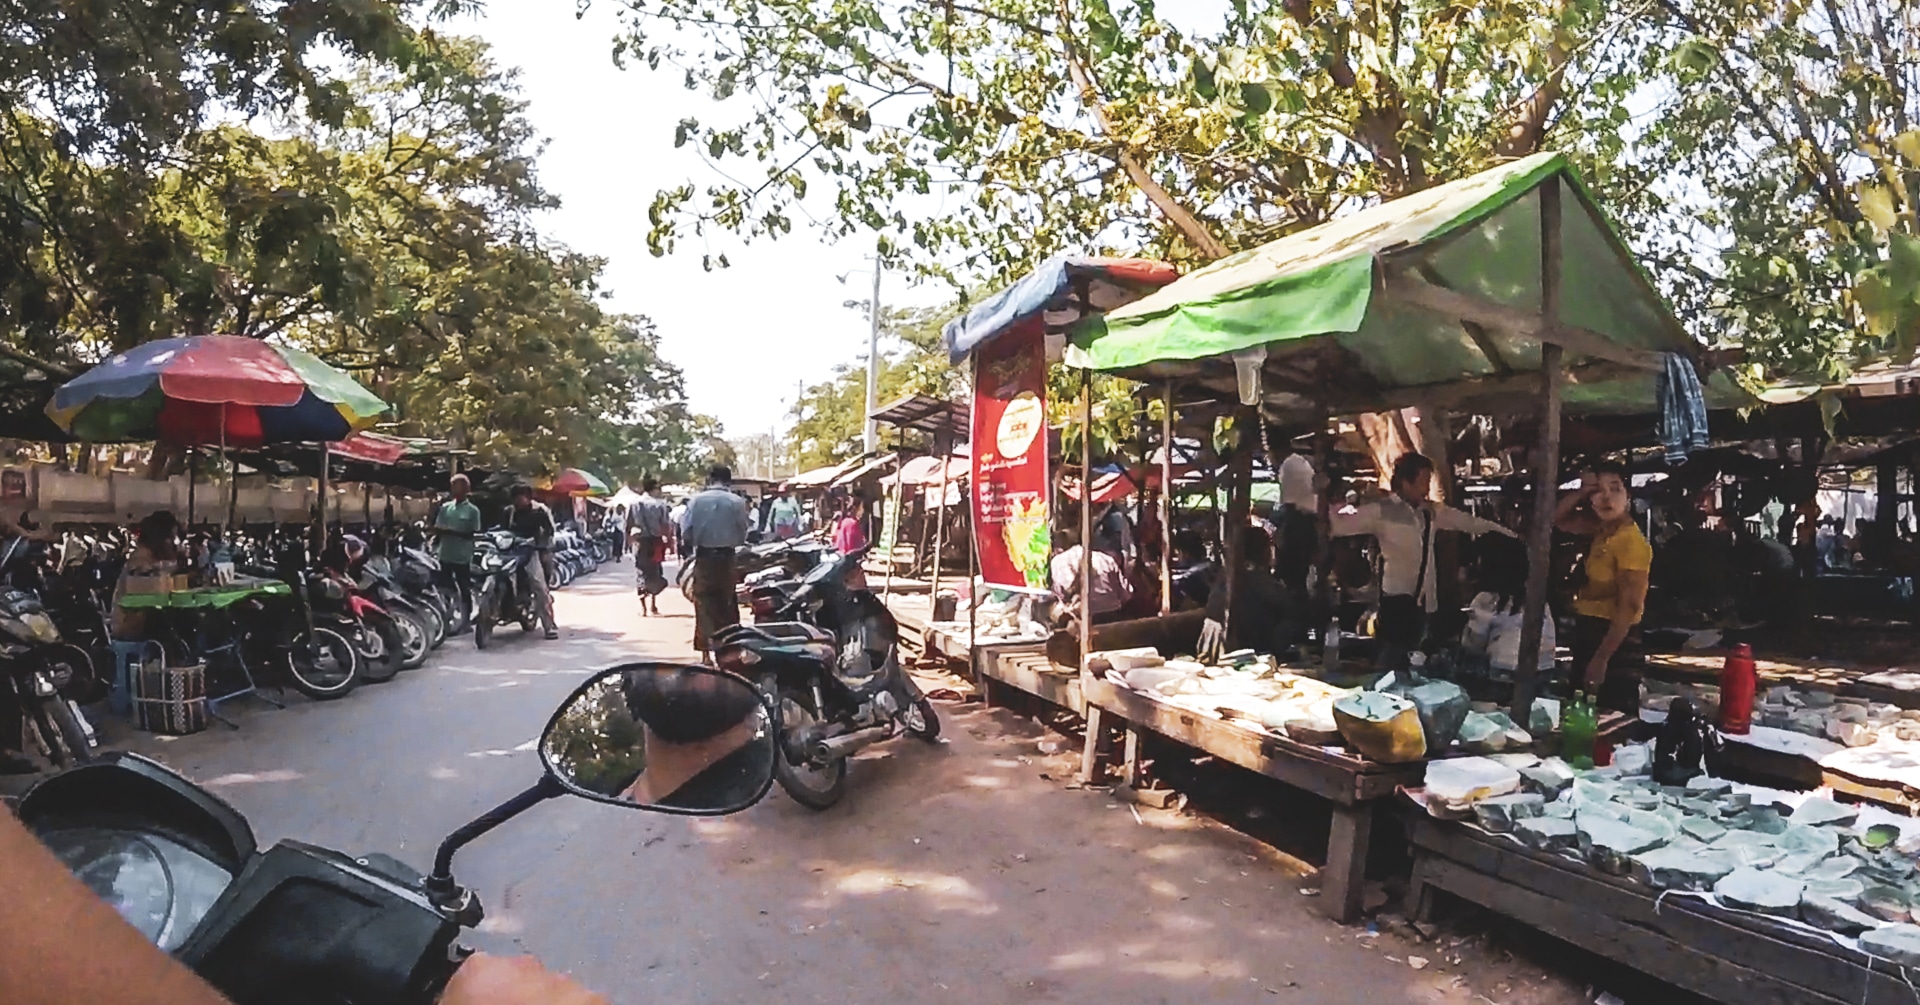 arrivée en scooter au marché de la jade à Mandalay